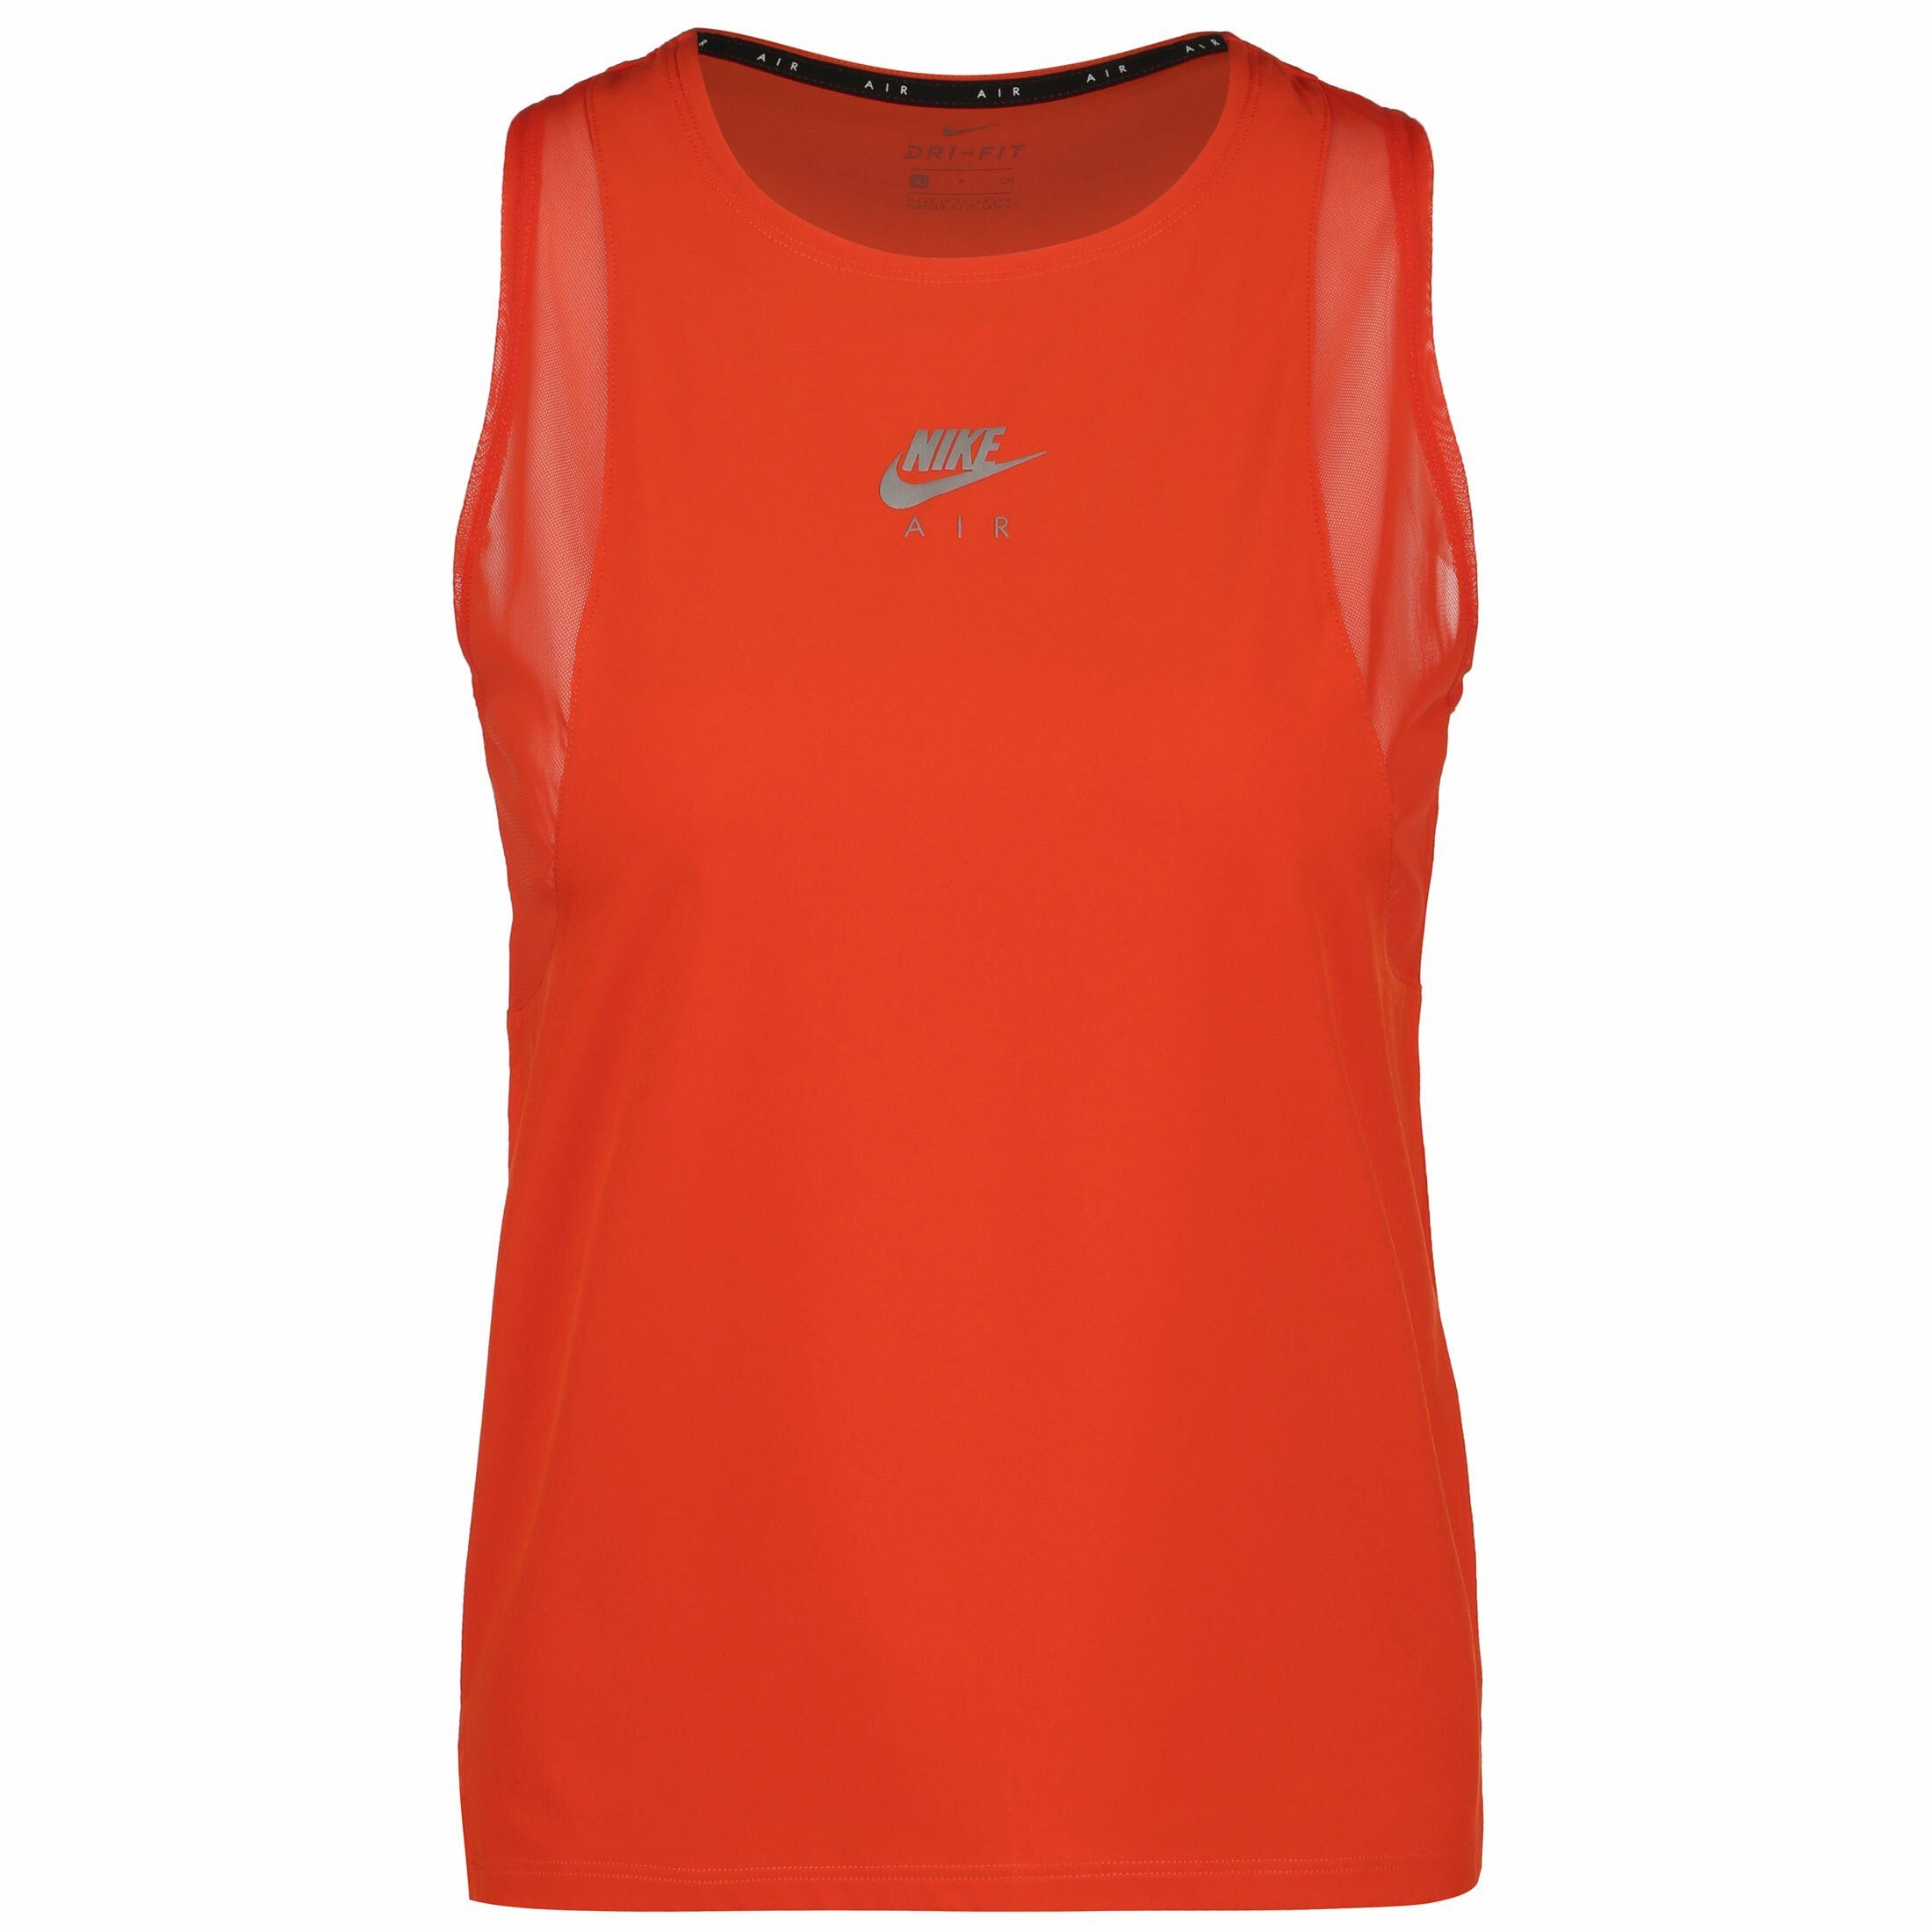 Nike Sportshirts online kaufen | OTTO